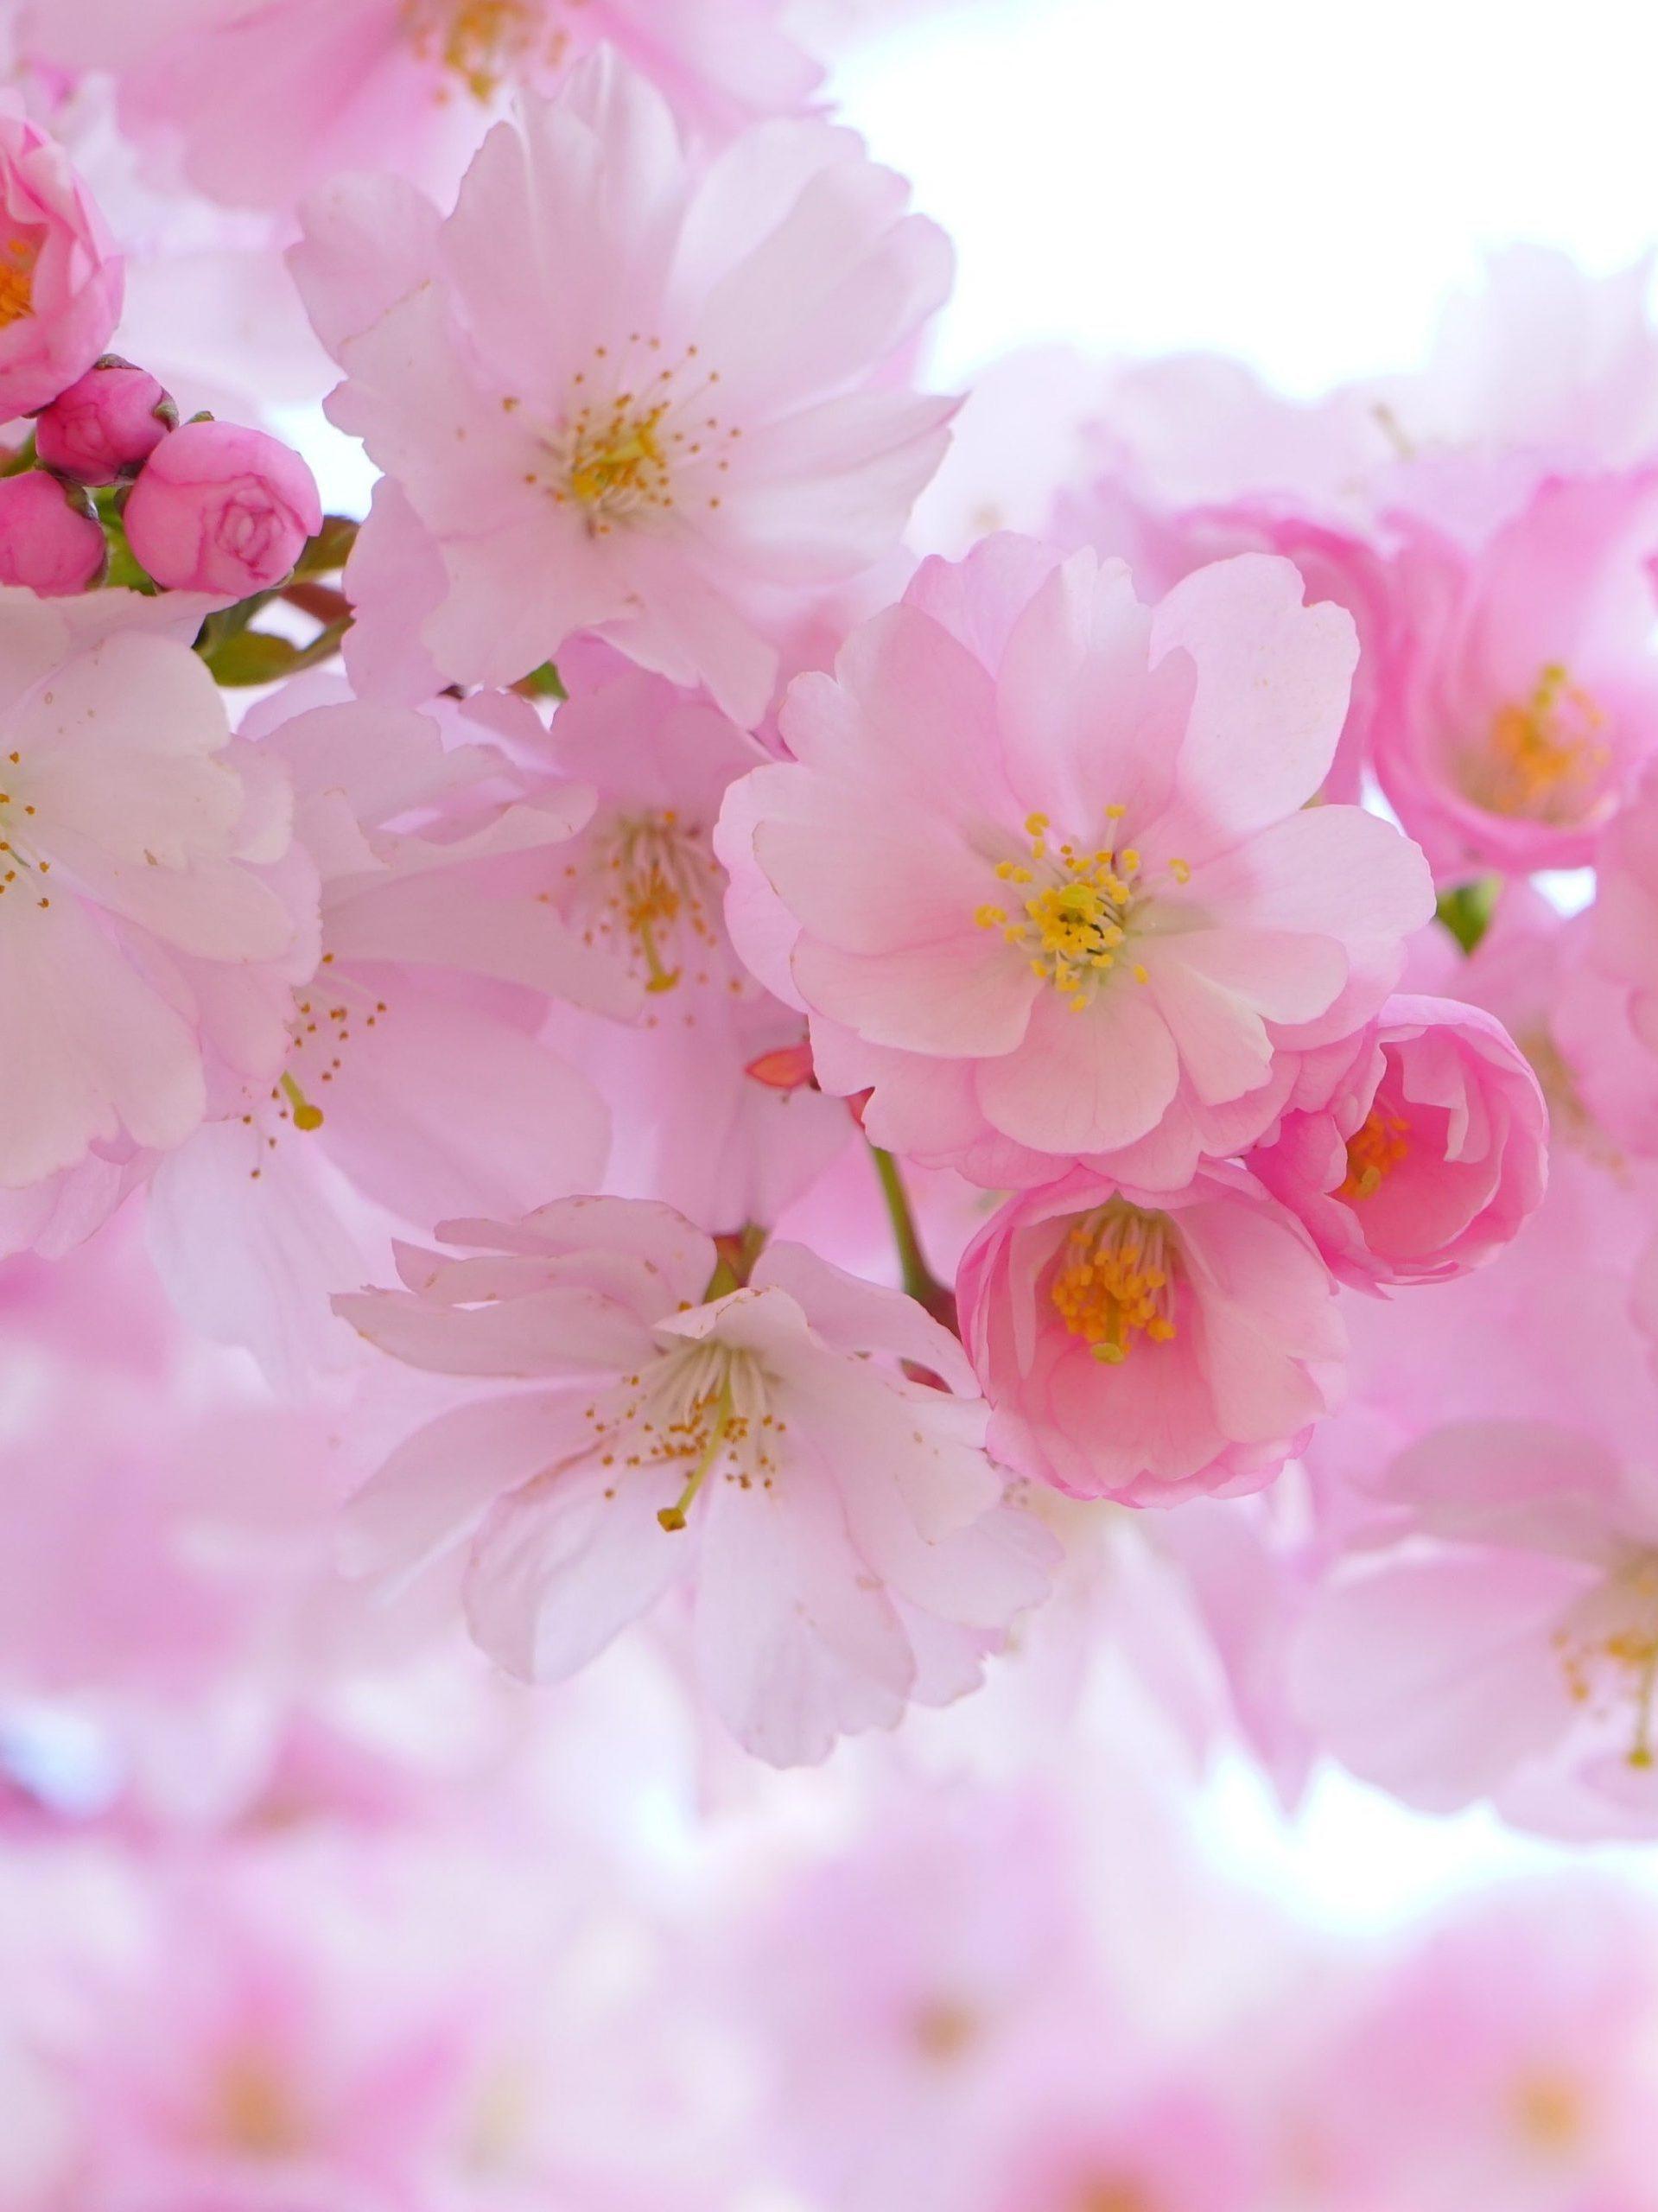 Sakura Flowers Anime Wallpapers - Top Free Sakura Flowers Anime ...